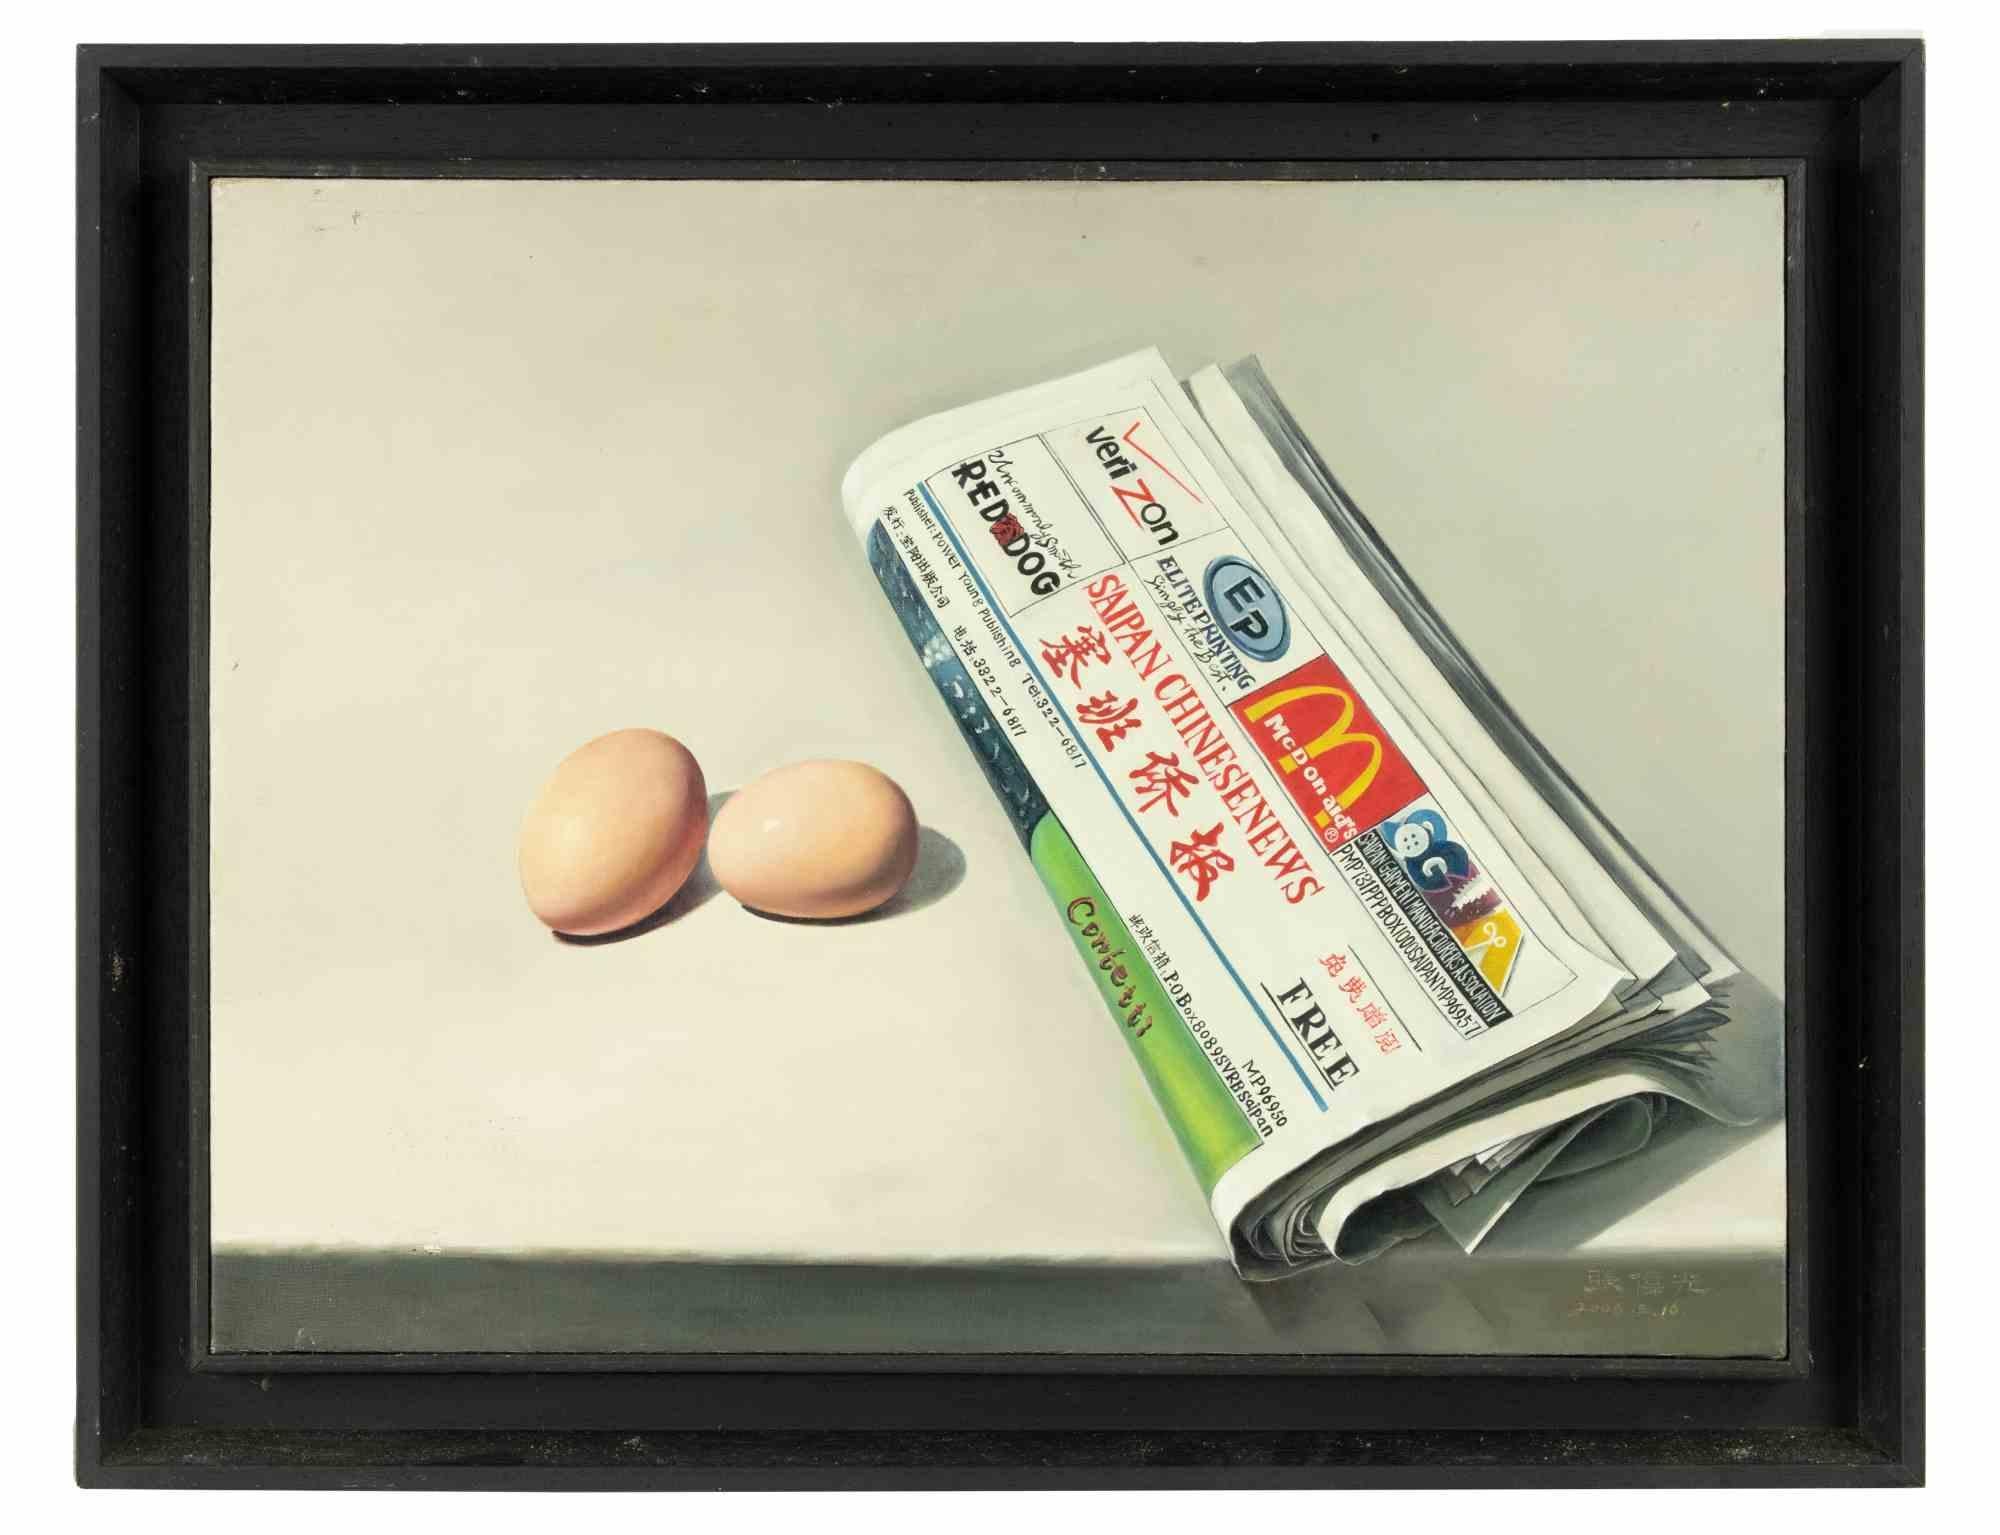 Œufs et papier journal est une peinture à l'huile originale réalisée par l'artiste.  par Zhang Wei Guang (Miroir) en 2006.

Inclut le cadre.

Signé à la main en bas à droite.

Signature et divers signes en calligraphie chinoise au dos.

Très bonnes